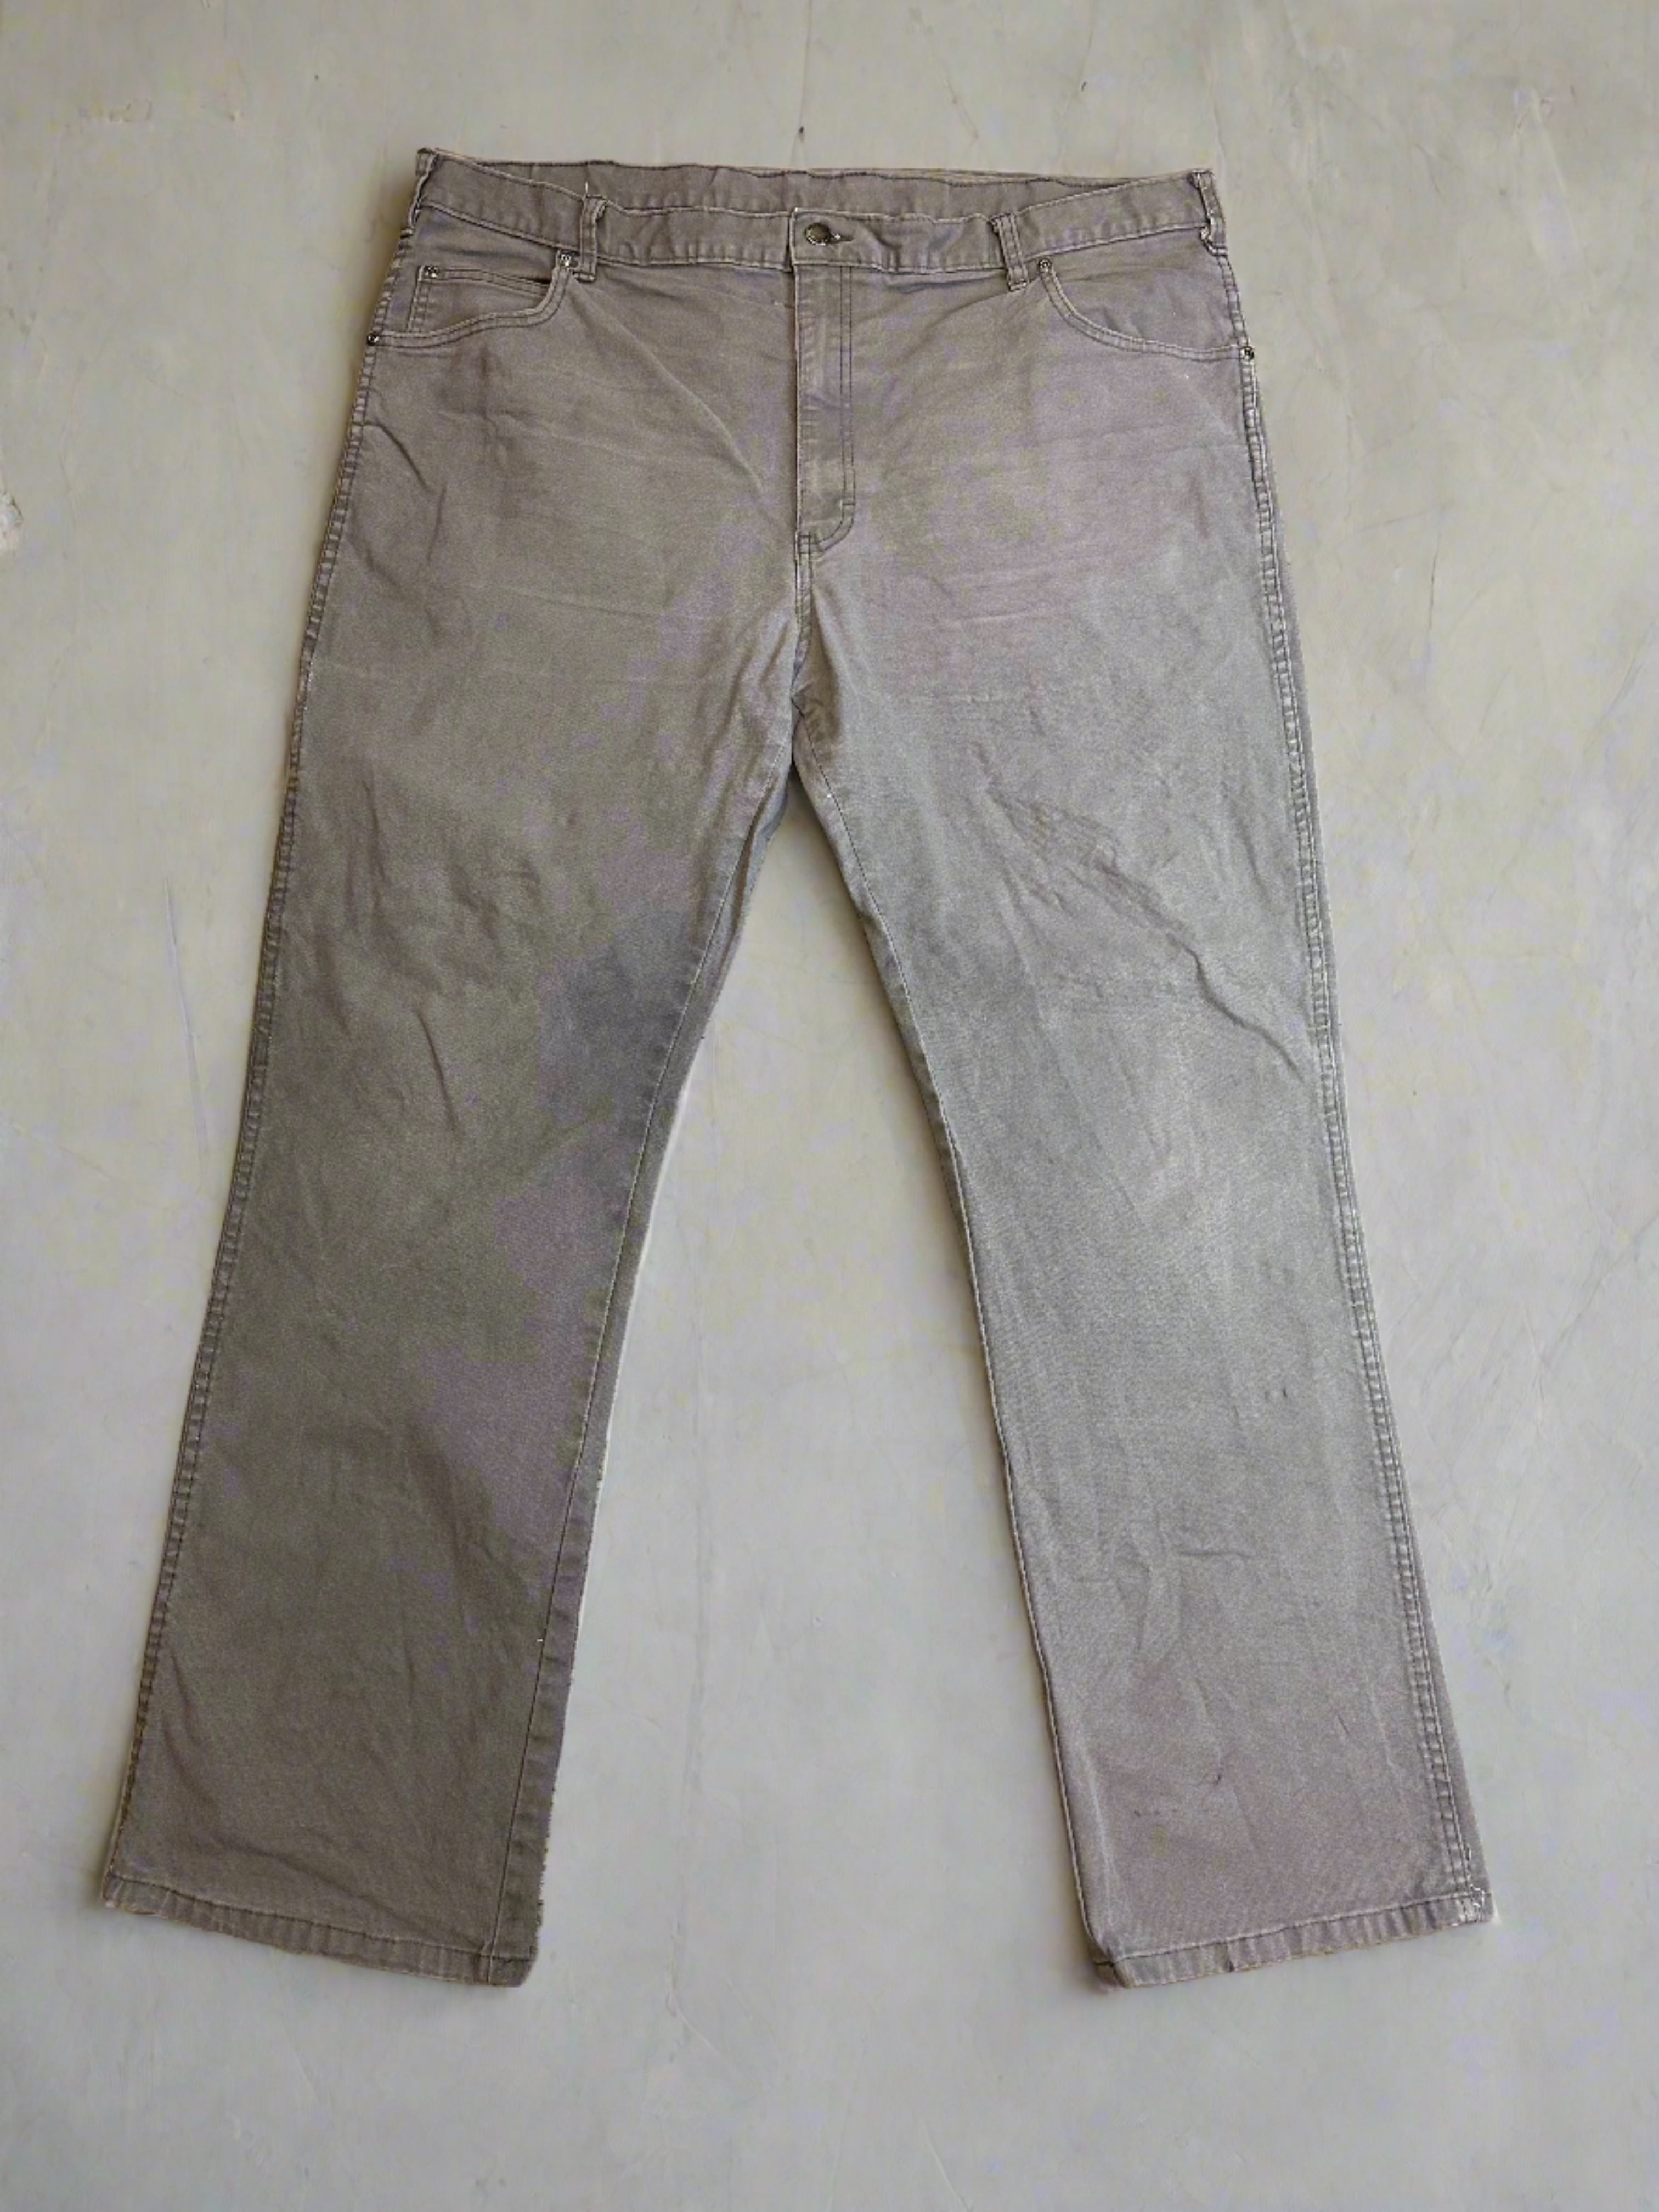 Vintage Dickies Pants - size 40x32